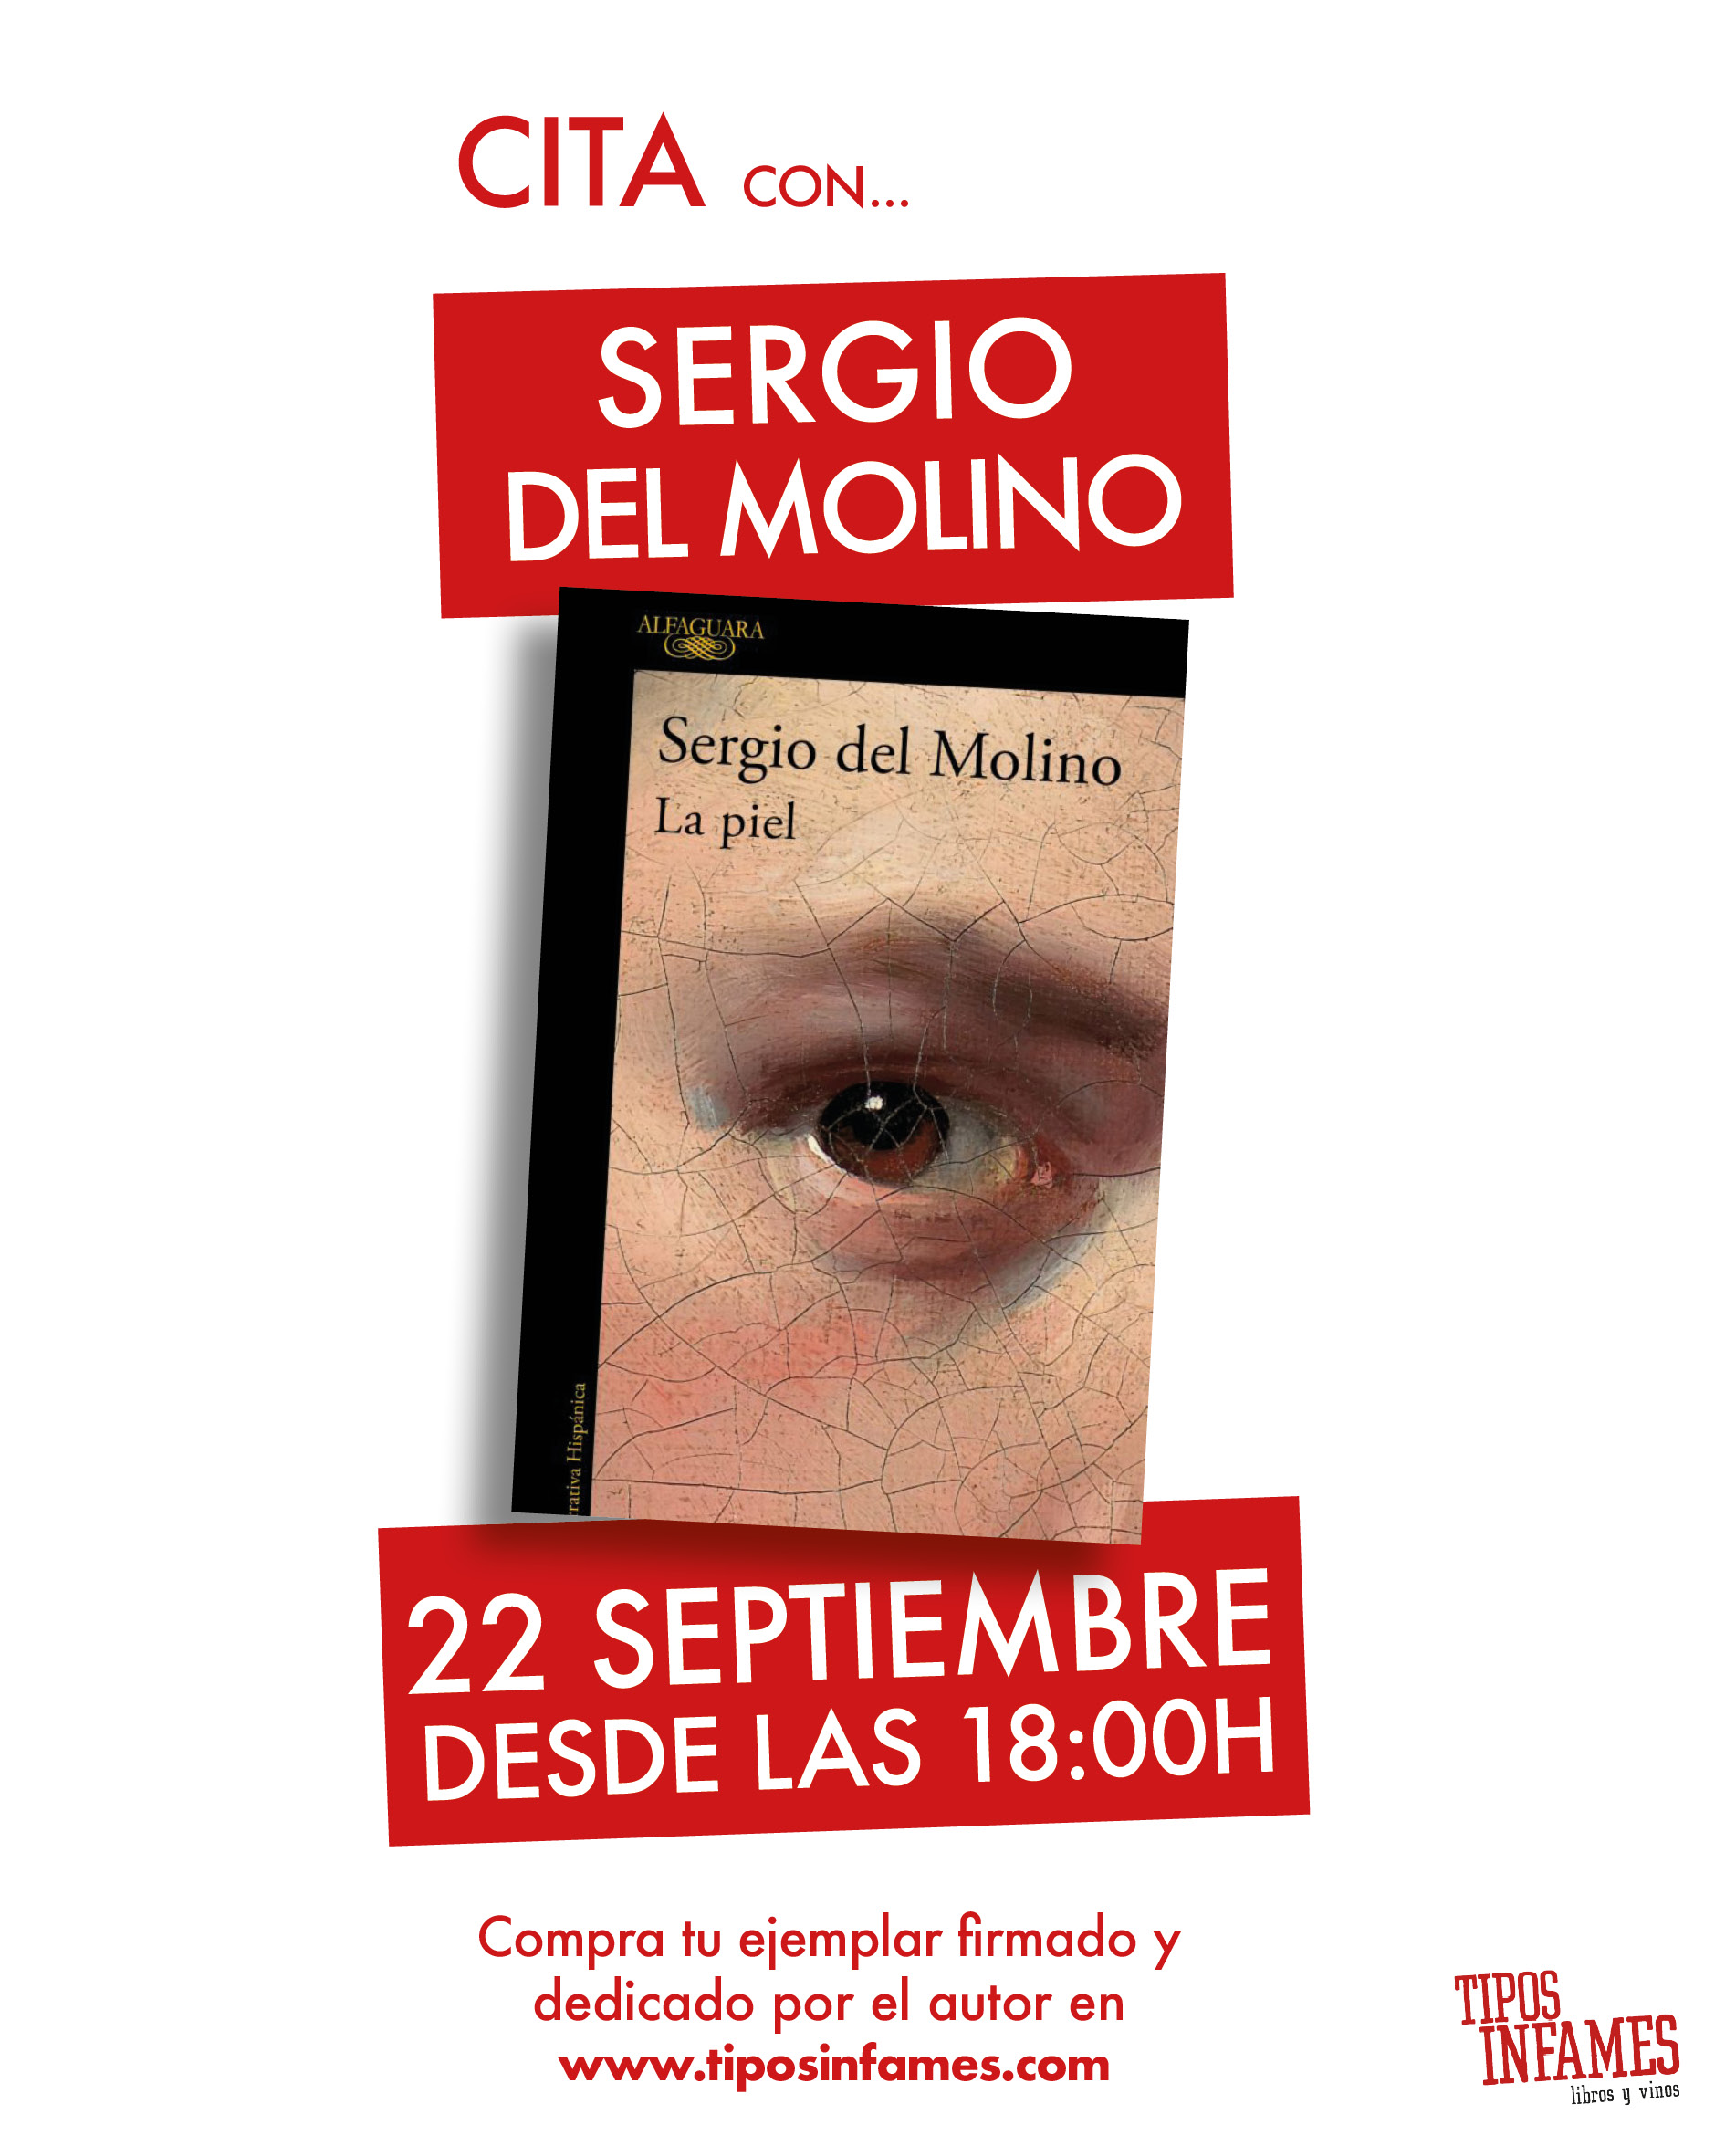 Cita con... Sergio del Molino